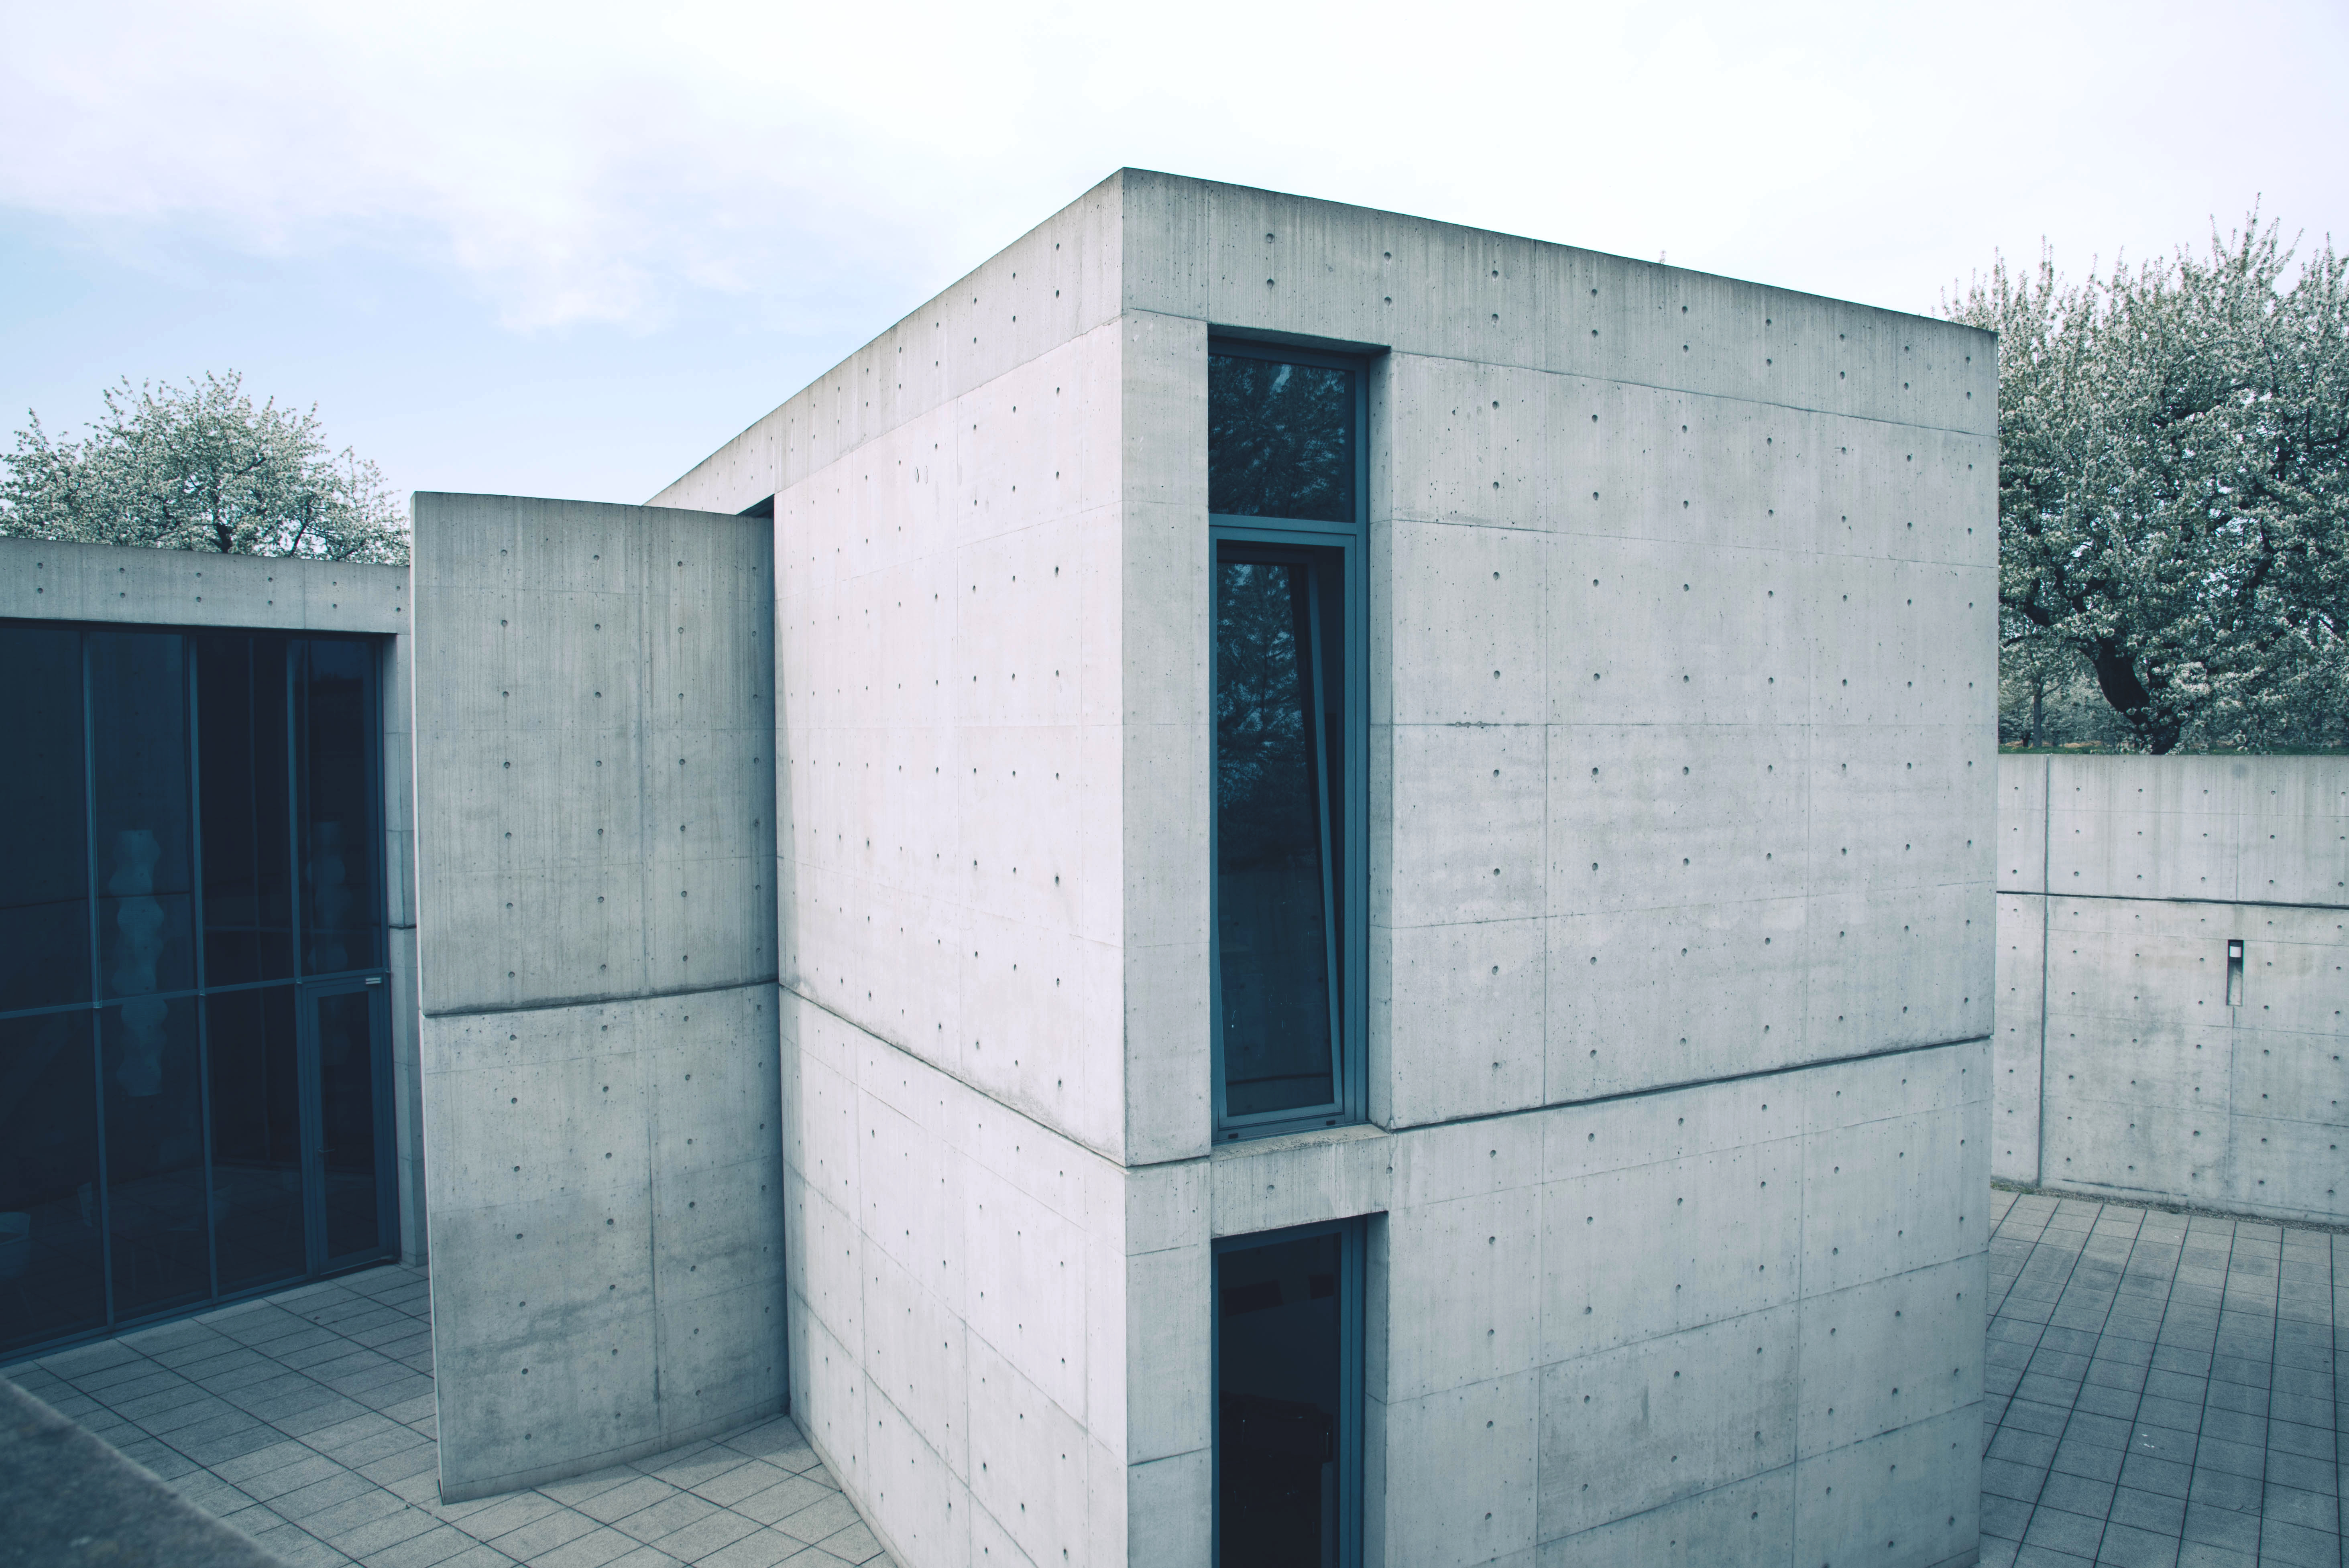 Også Tadao Ando har bygget på Vitra Campus i Tyskland. Her hans konference pavillon i in-situ støbt beton fra 1993.